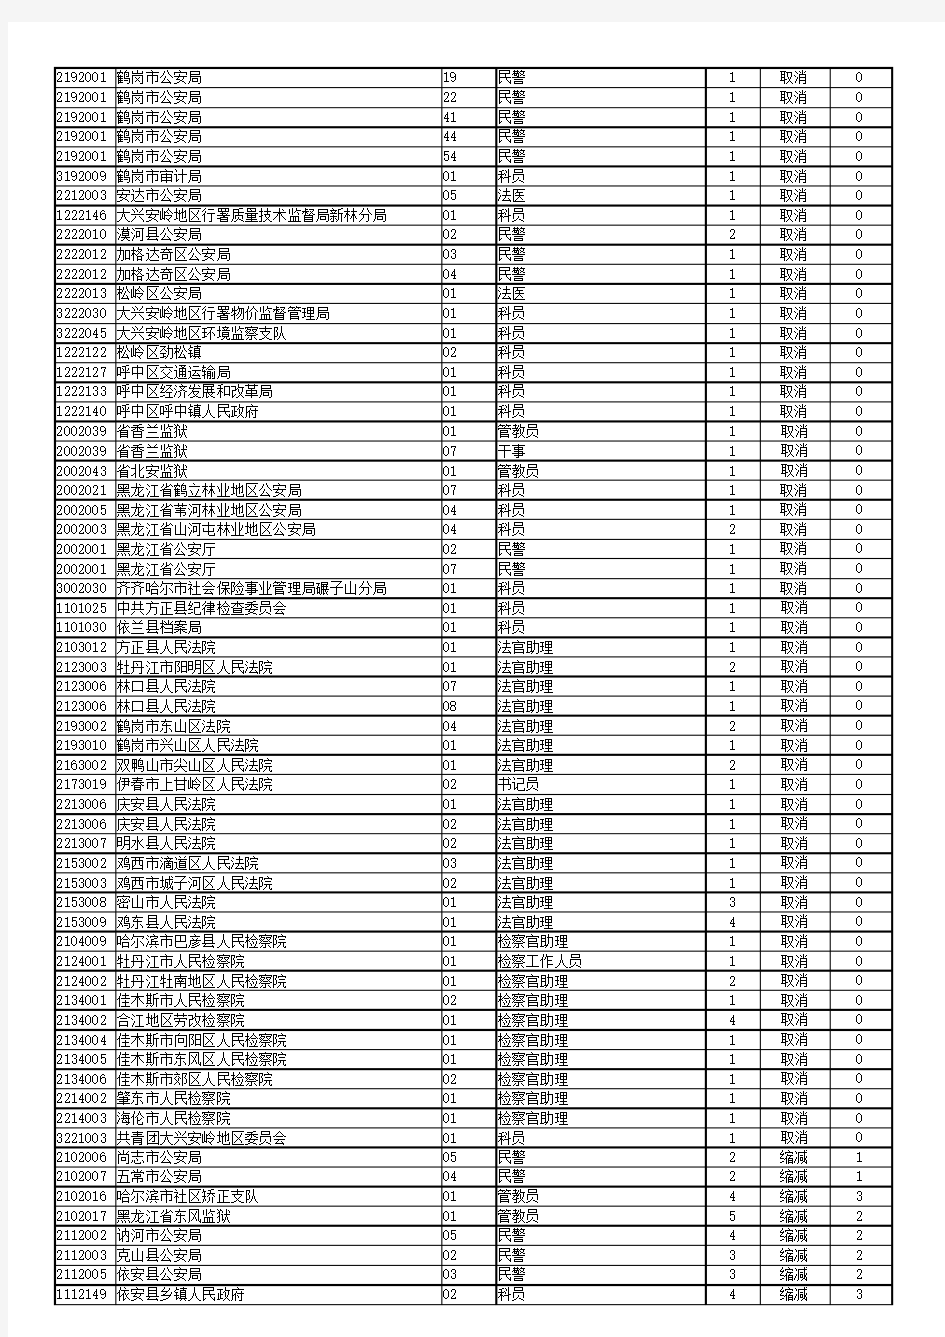 黑龙江省2018年度考试录用公务员招考计划(调整部分)